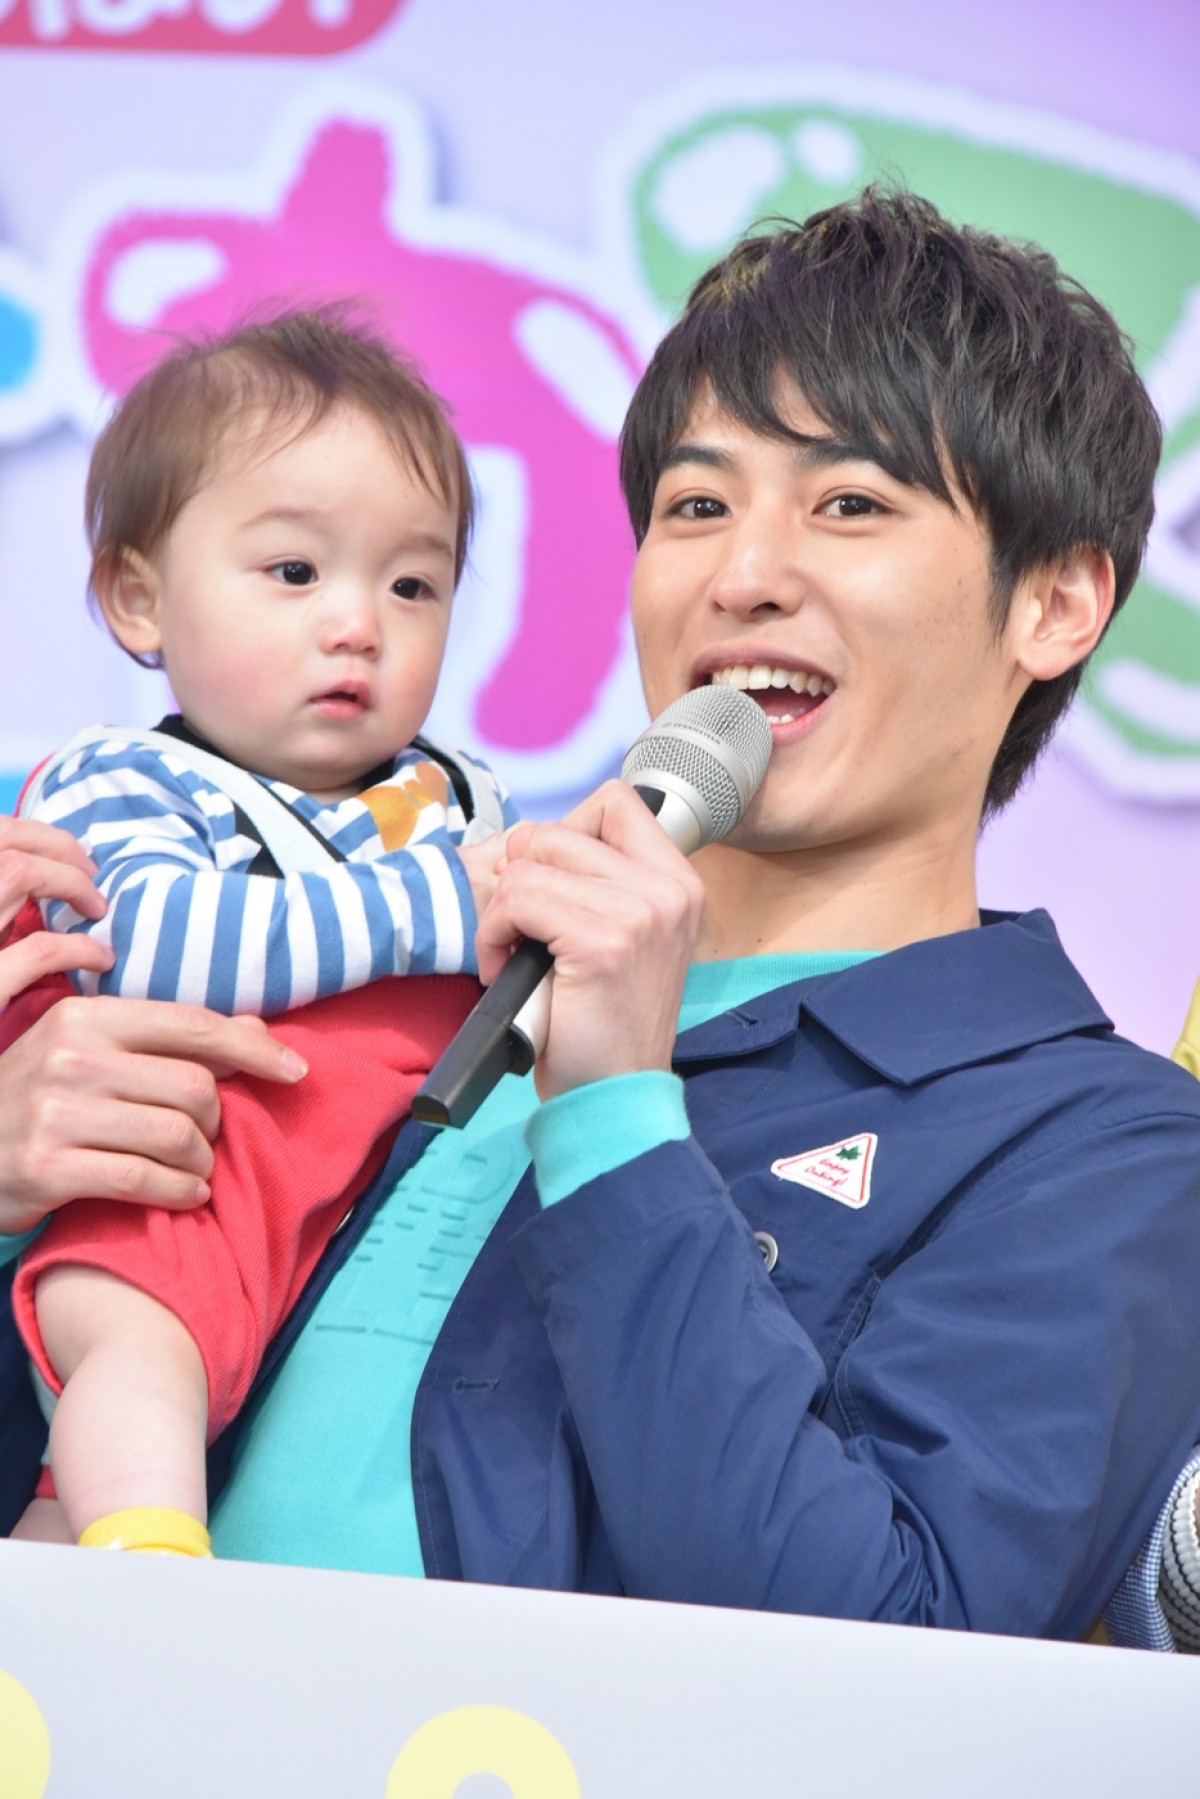 堀井新太、赤ちゃんとの共演に充実感「奇跡の瞬間がいくつも撮れている」